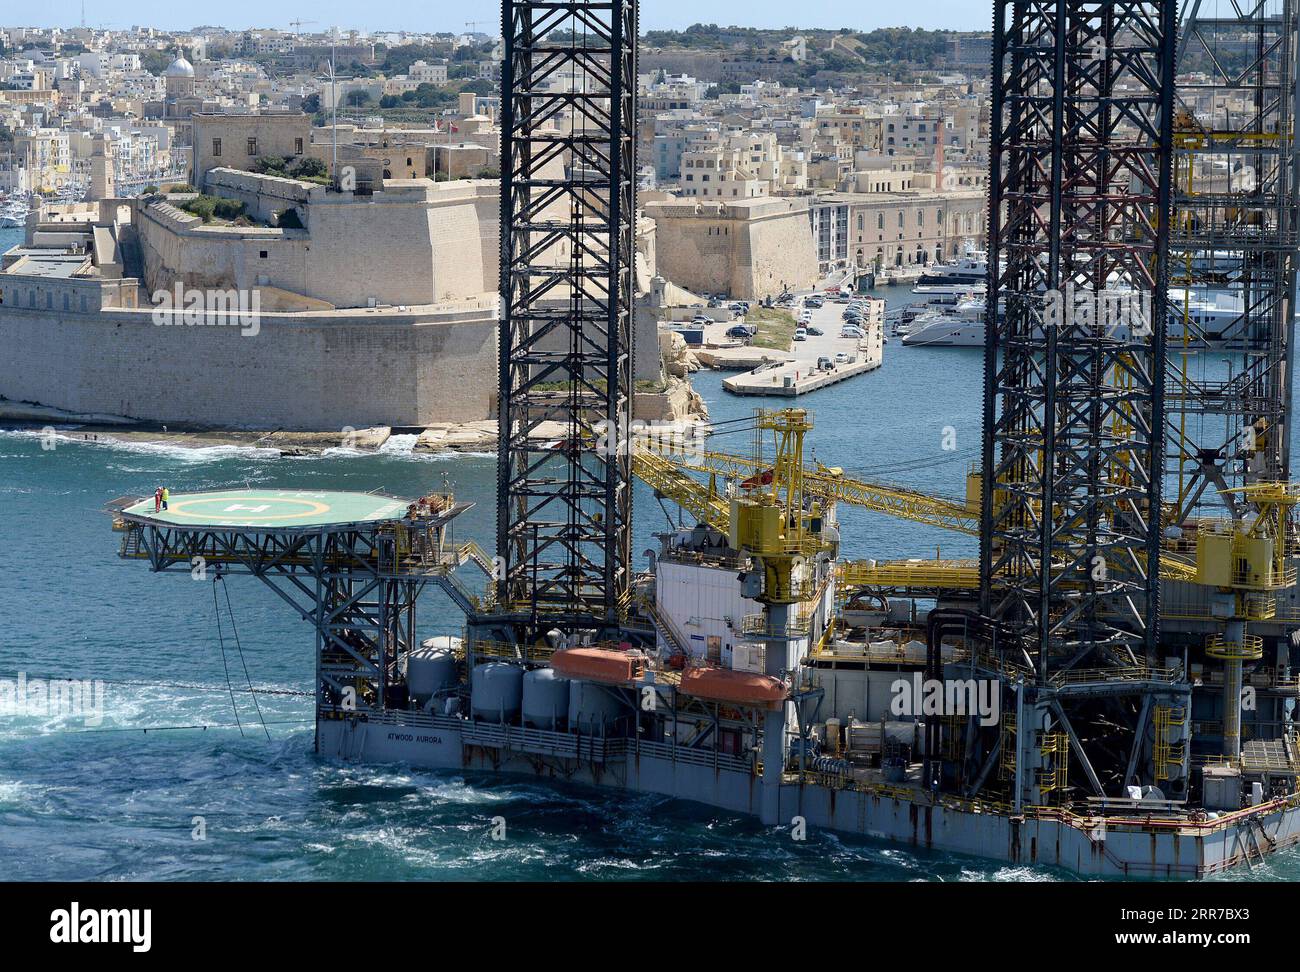 210325 -- LA VALLETTA, 25 marzo 2021 -- un petroliere è stato rimosso dalla Valletta Grand Harbour, la Valletta, capitale di Malta, il 24 marzo 2021. L'oilrig di nome Atwood Aurora aveva rovinato lo skyline di la Valletta per diversi anni. Alla fine viene rimosso a seguito di un accordo con il cantiere navale incaricato della sua manutenzione. La rimozione fa seguito a quella di un'altra macchina petrolifera che è stata rimossa due settimane fa. Foto di /Xinhua MALTA-VALLETTA-MARITIME-OILRIG-REMOVED JonathanxBorg PUBLICATIONxNOTxINxCHN Foto Stock